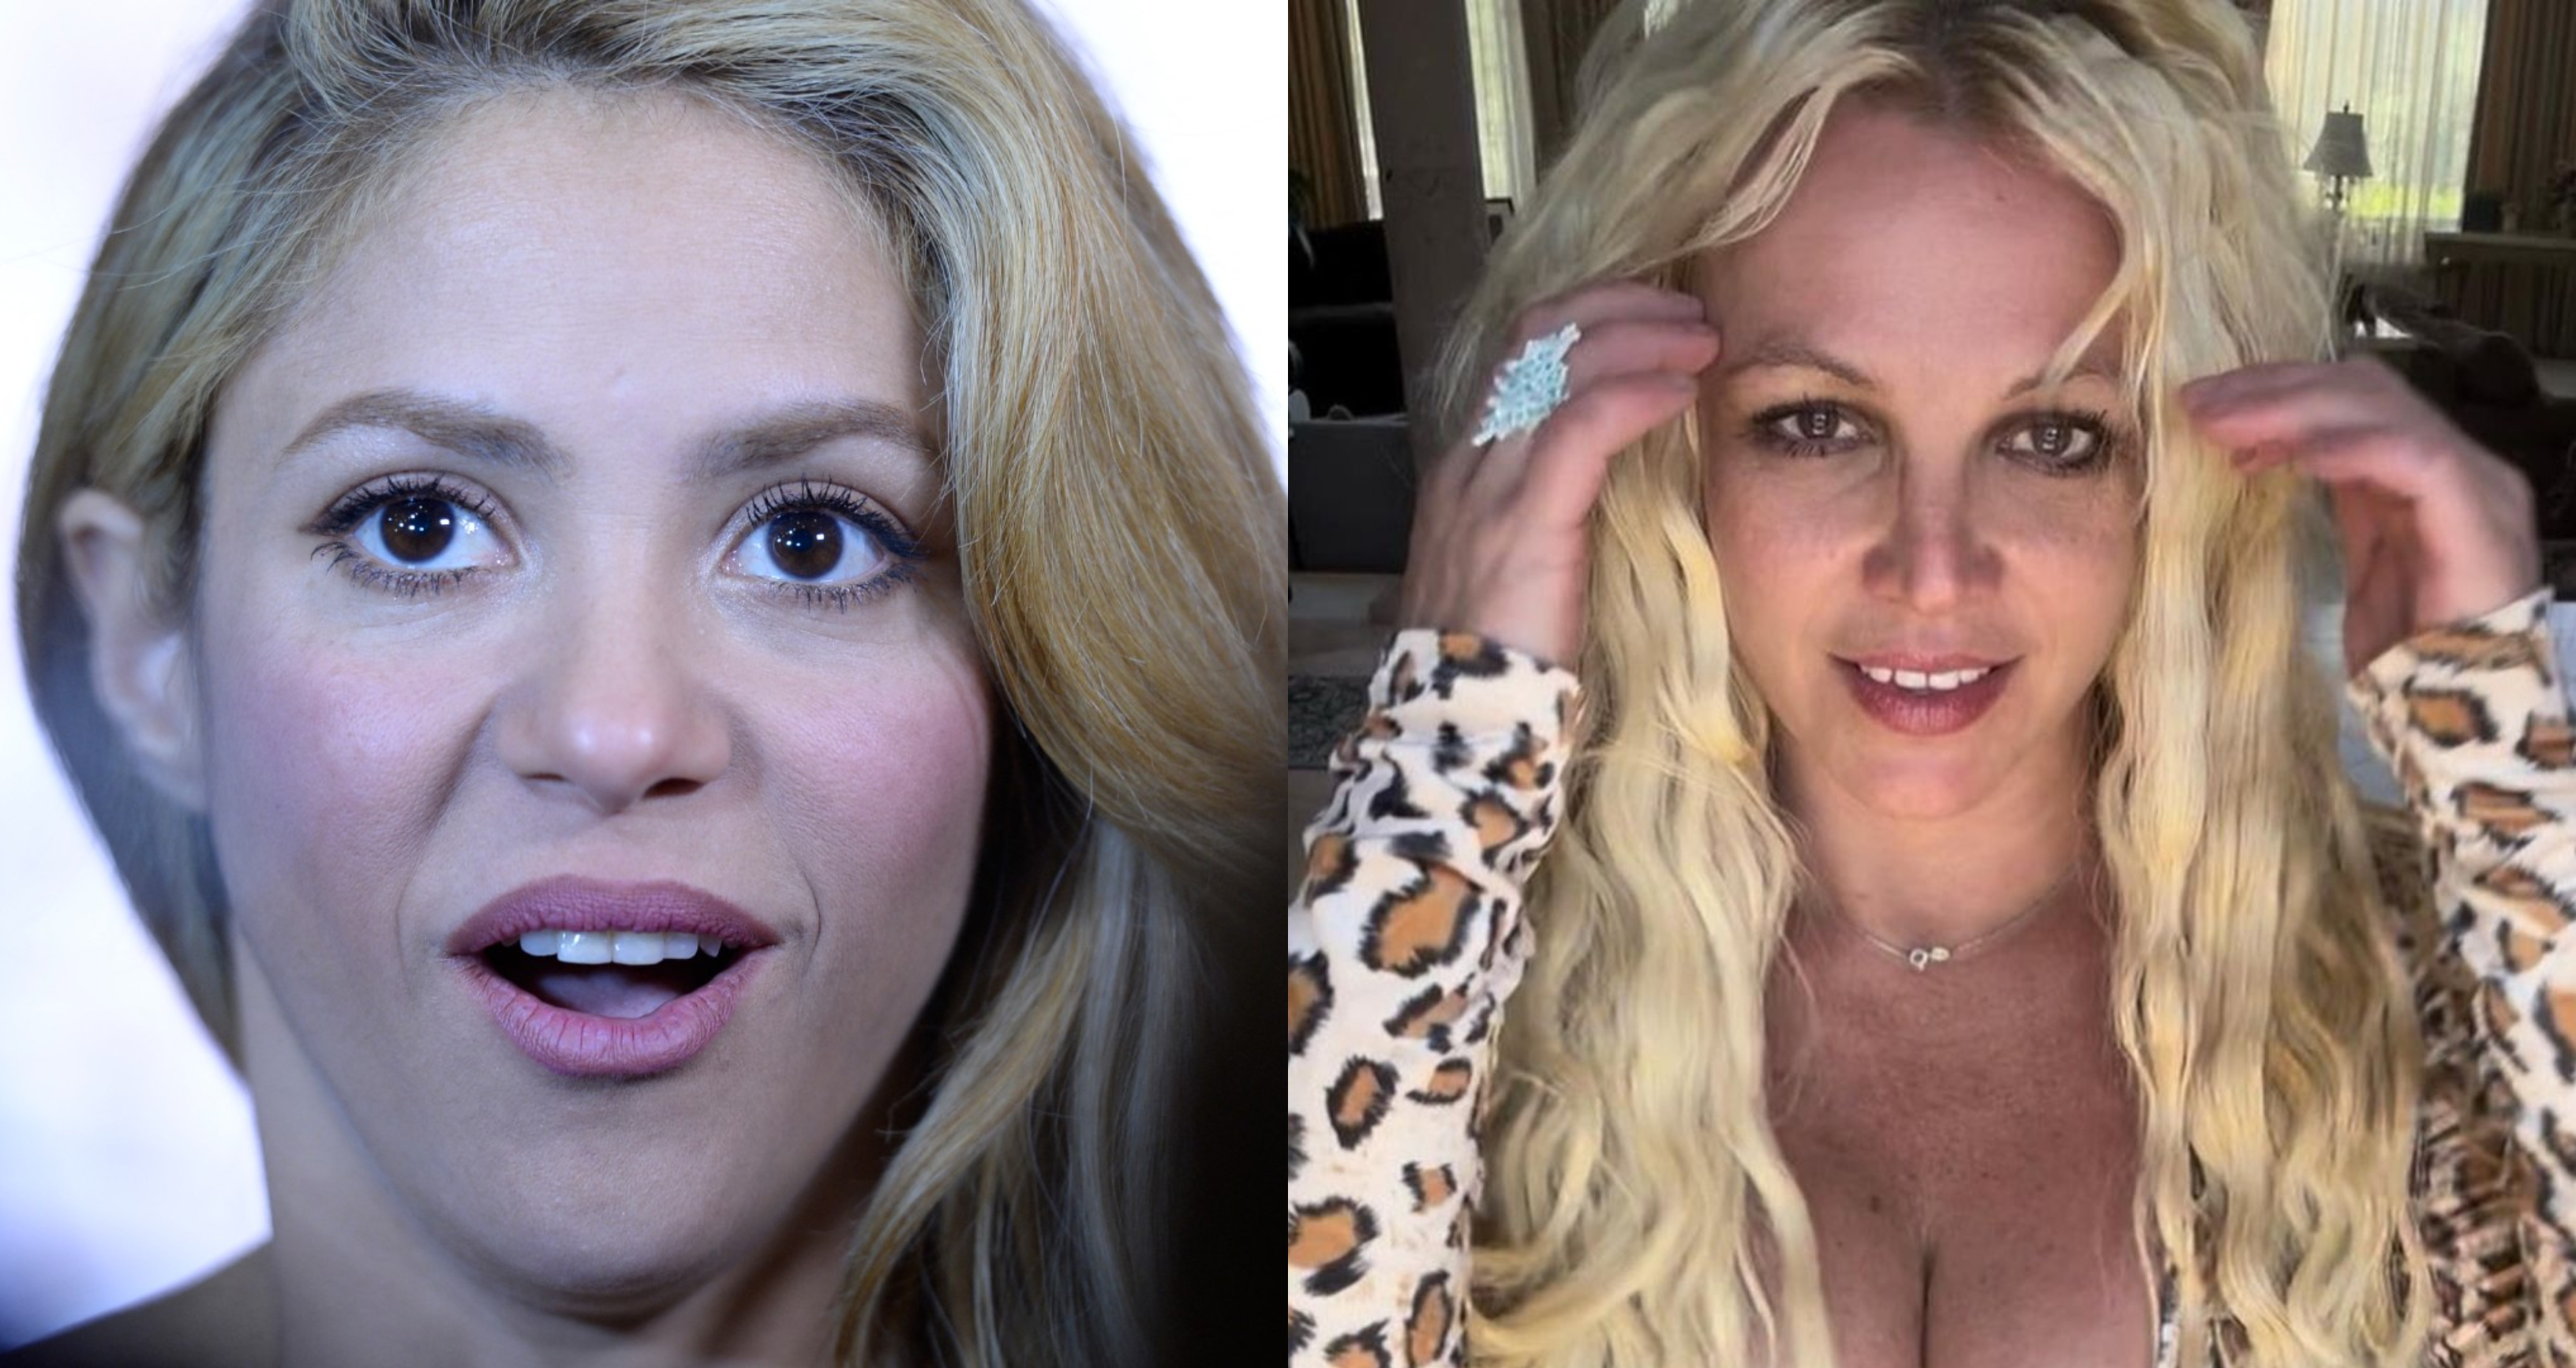 Culpan a Shakira de los videos preocupantes de Britney Spears en redes sociales 